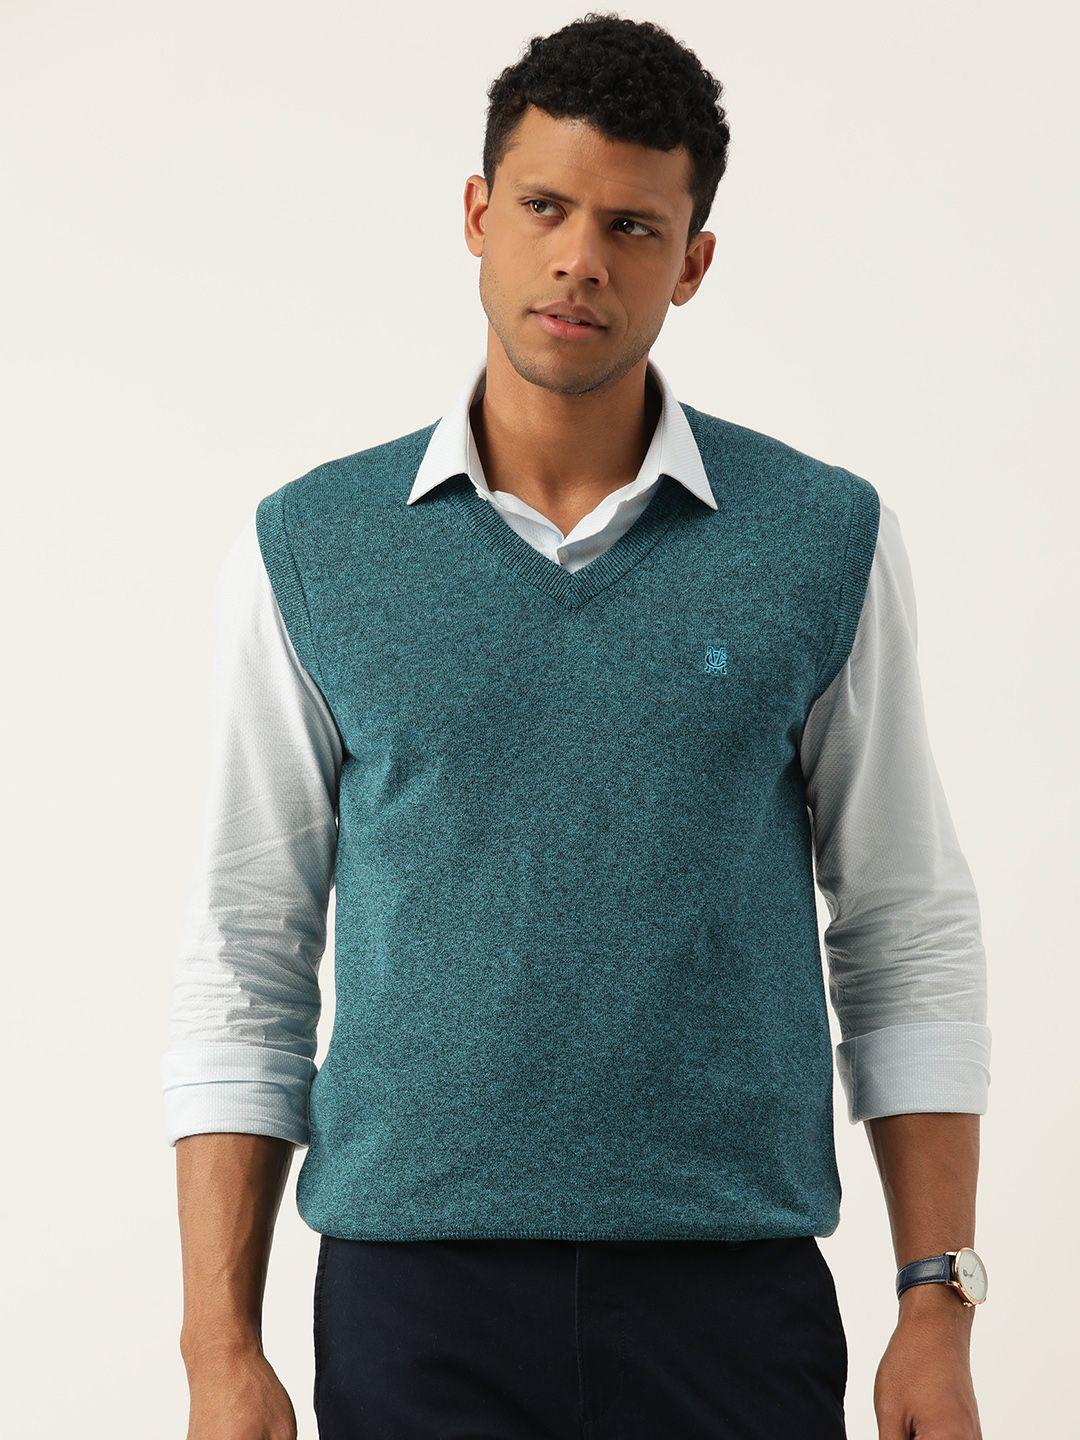 monte carlo v-neck sweater vest